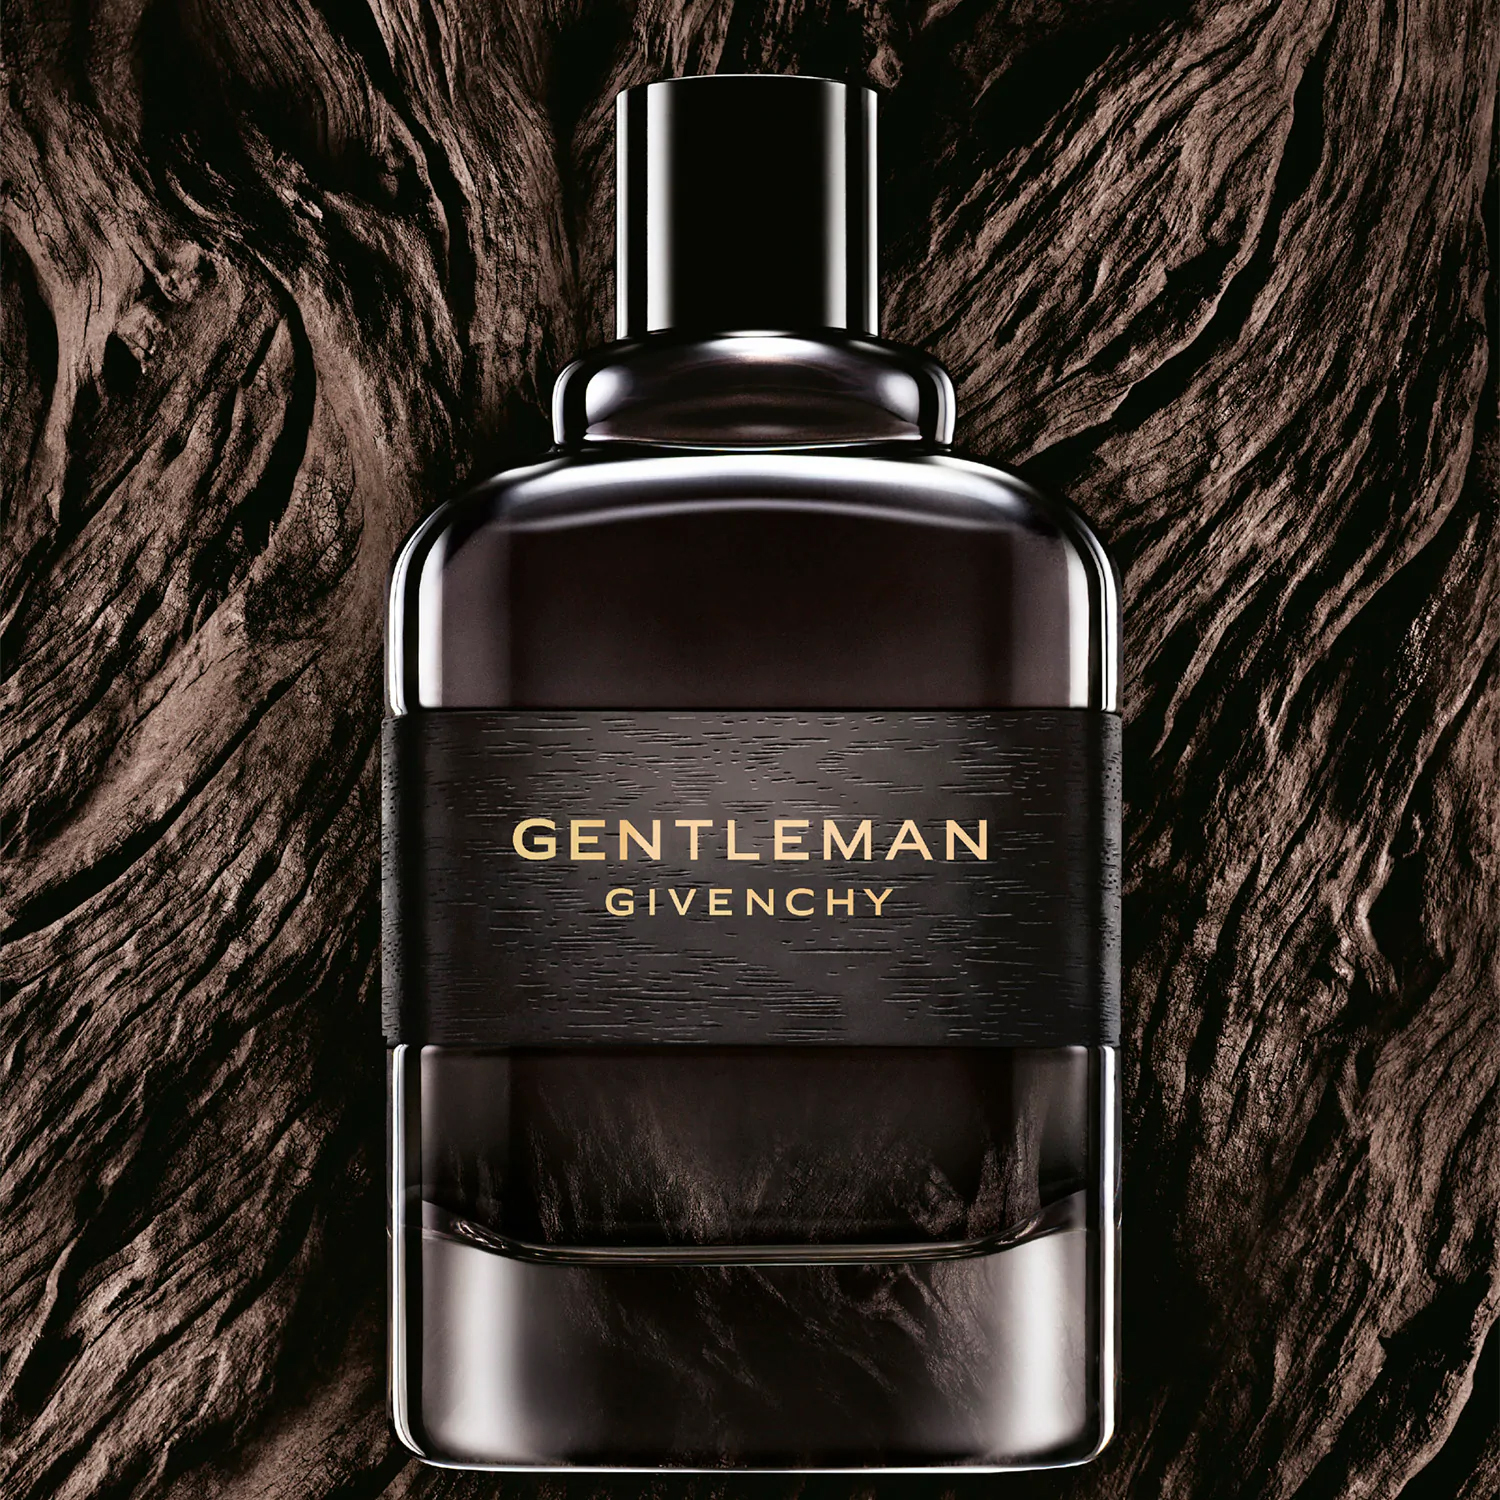 Gentleman Eau de Parfum Boisée Givenchy Cologne - ein neues Parfum für